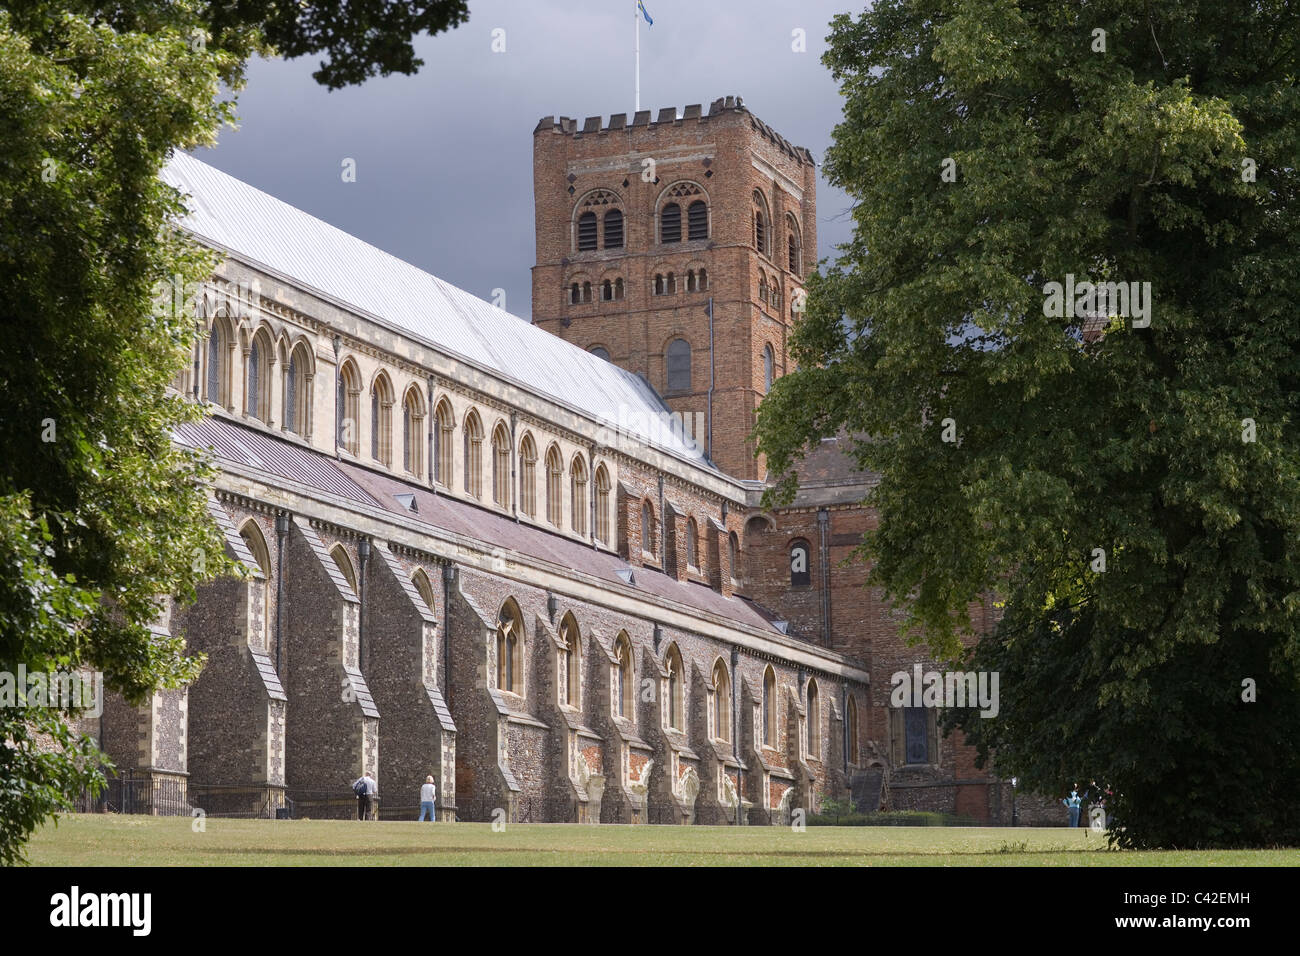 La Cathédrale et l'église abbatiale de Saint Alban. St Albans, Hertfordshire. L'Angleterre. Banque D'Images